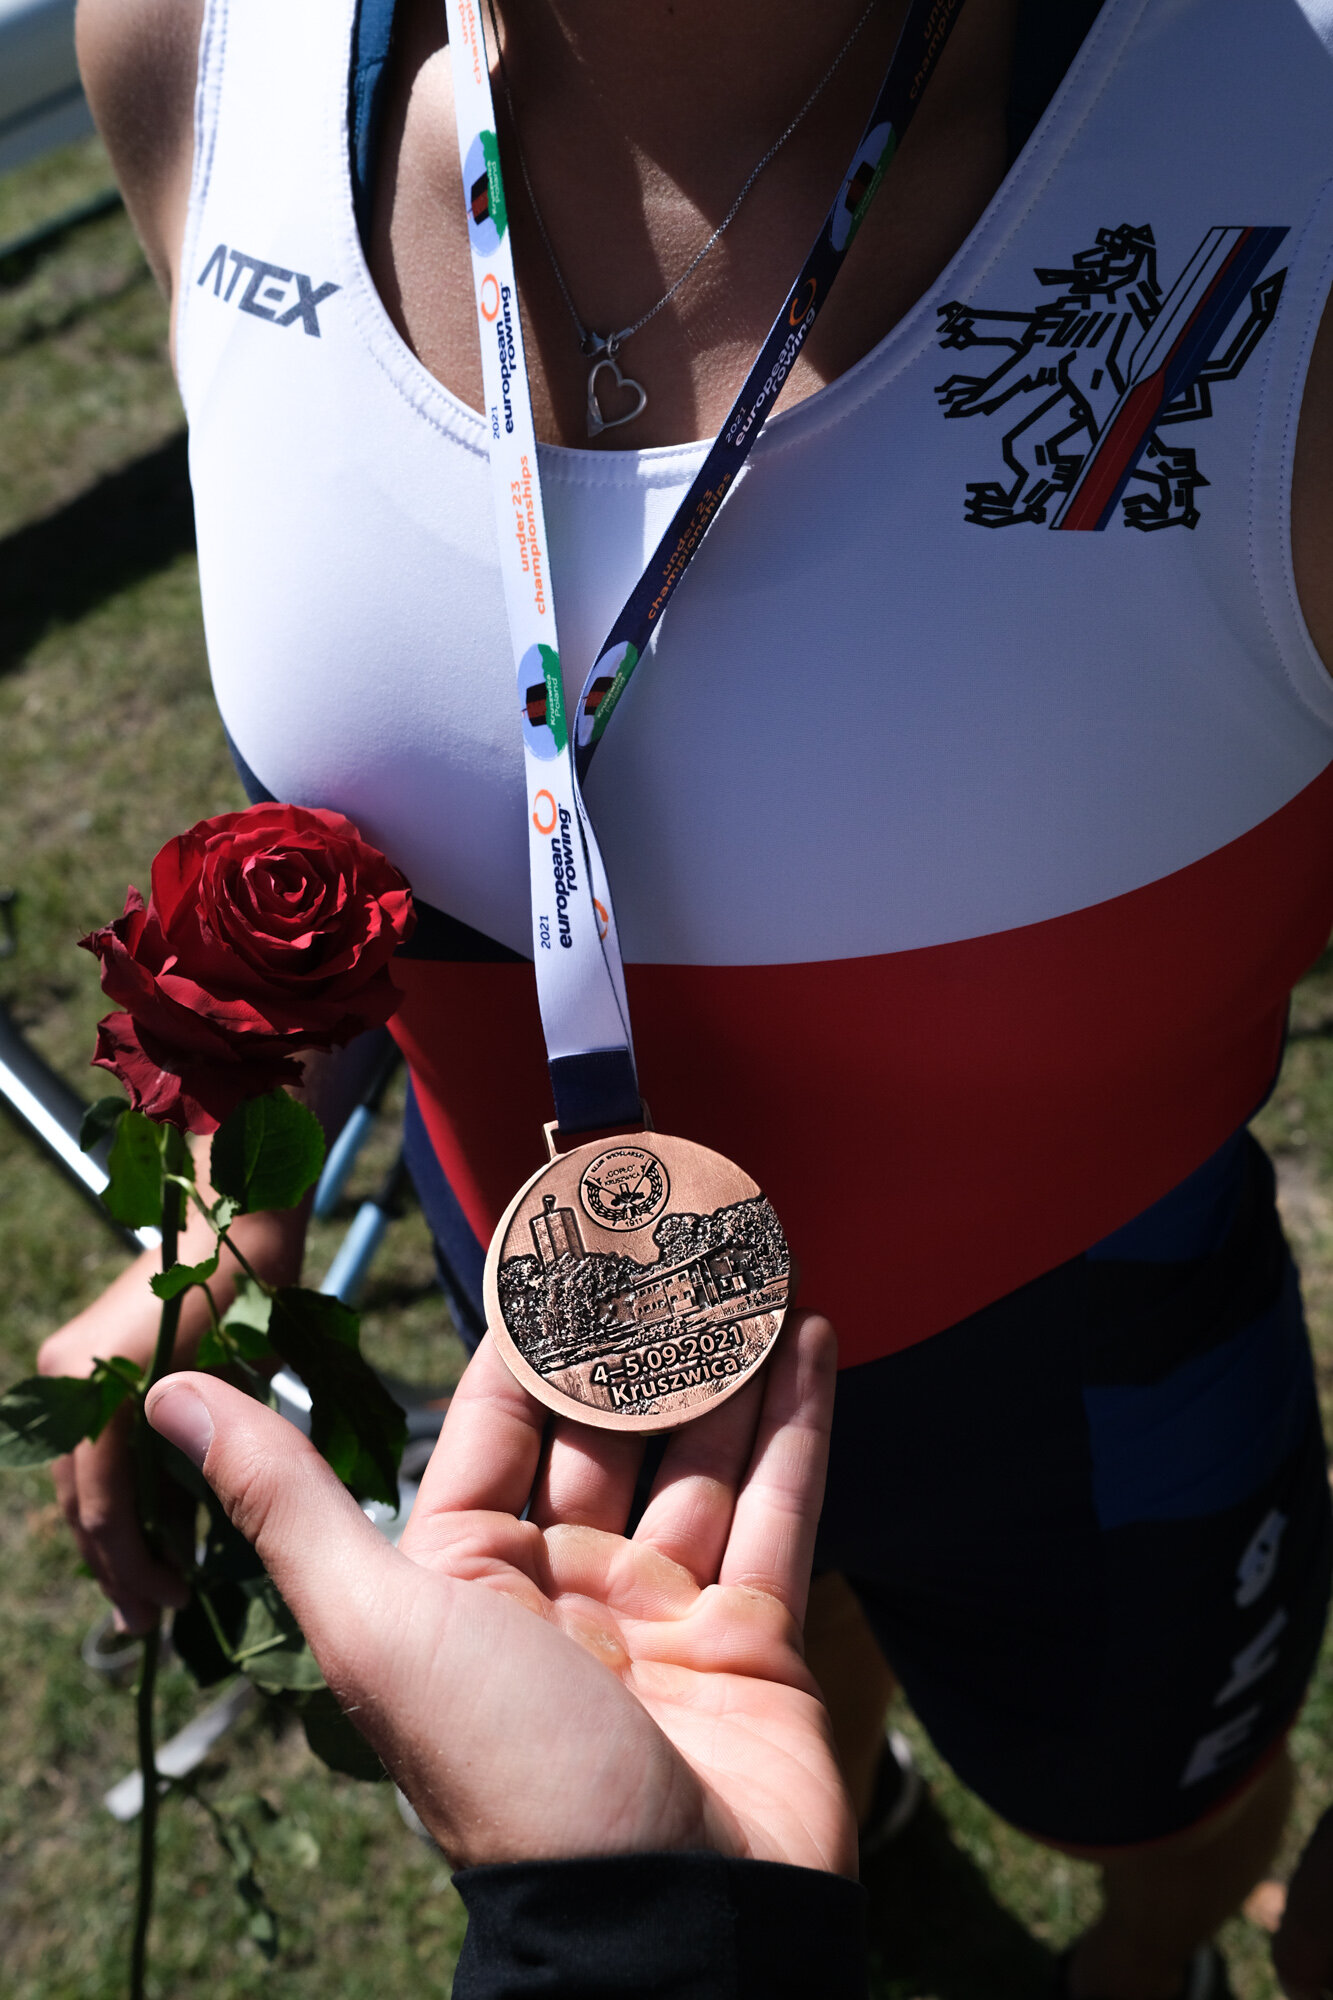  Mezi ulovené trofeje patří pořádná medaile a překrásná růže. Sladce voní. Foto: Jan Skalák 